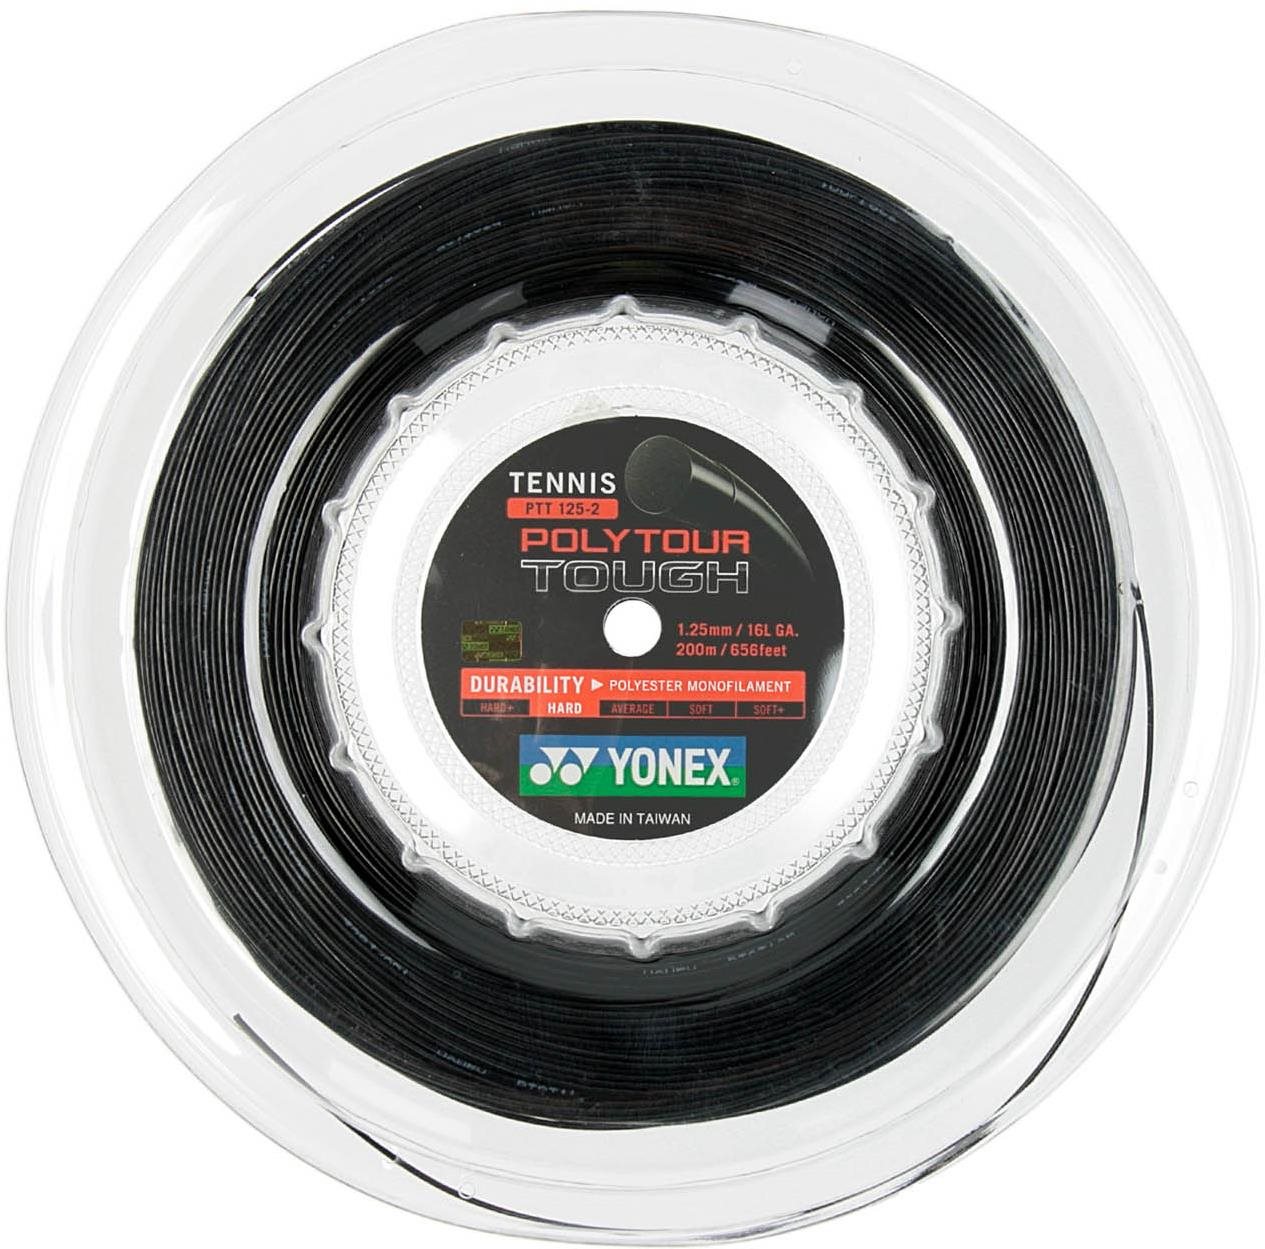 Teniszhúr Yonex Poly Tour TOUGH, 1,25mm, 200m, fekete